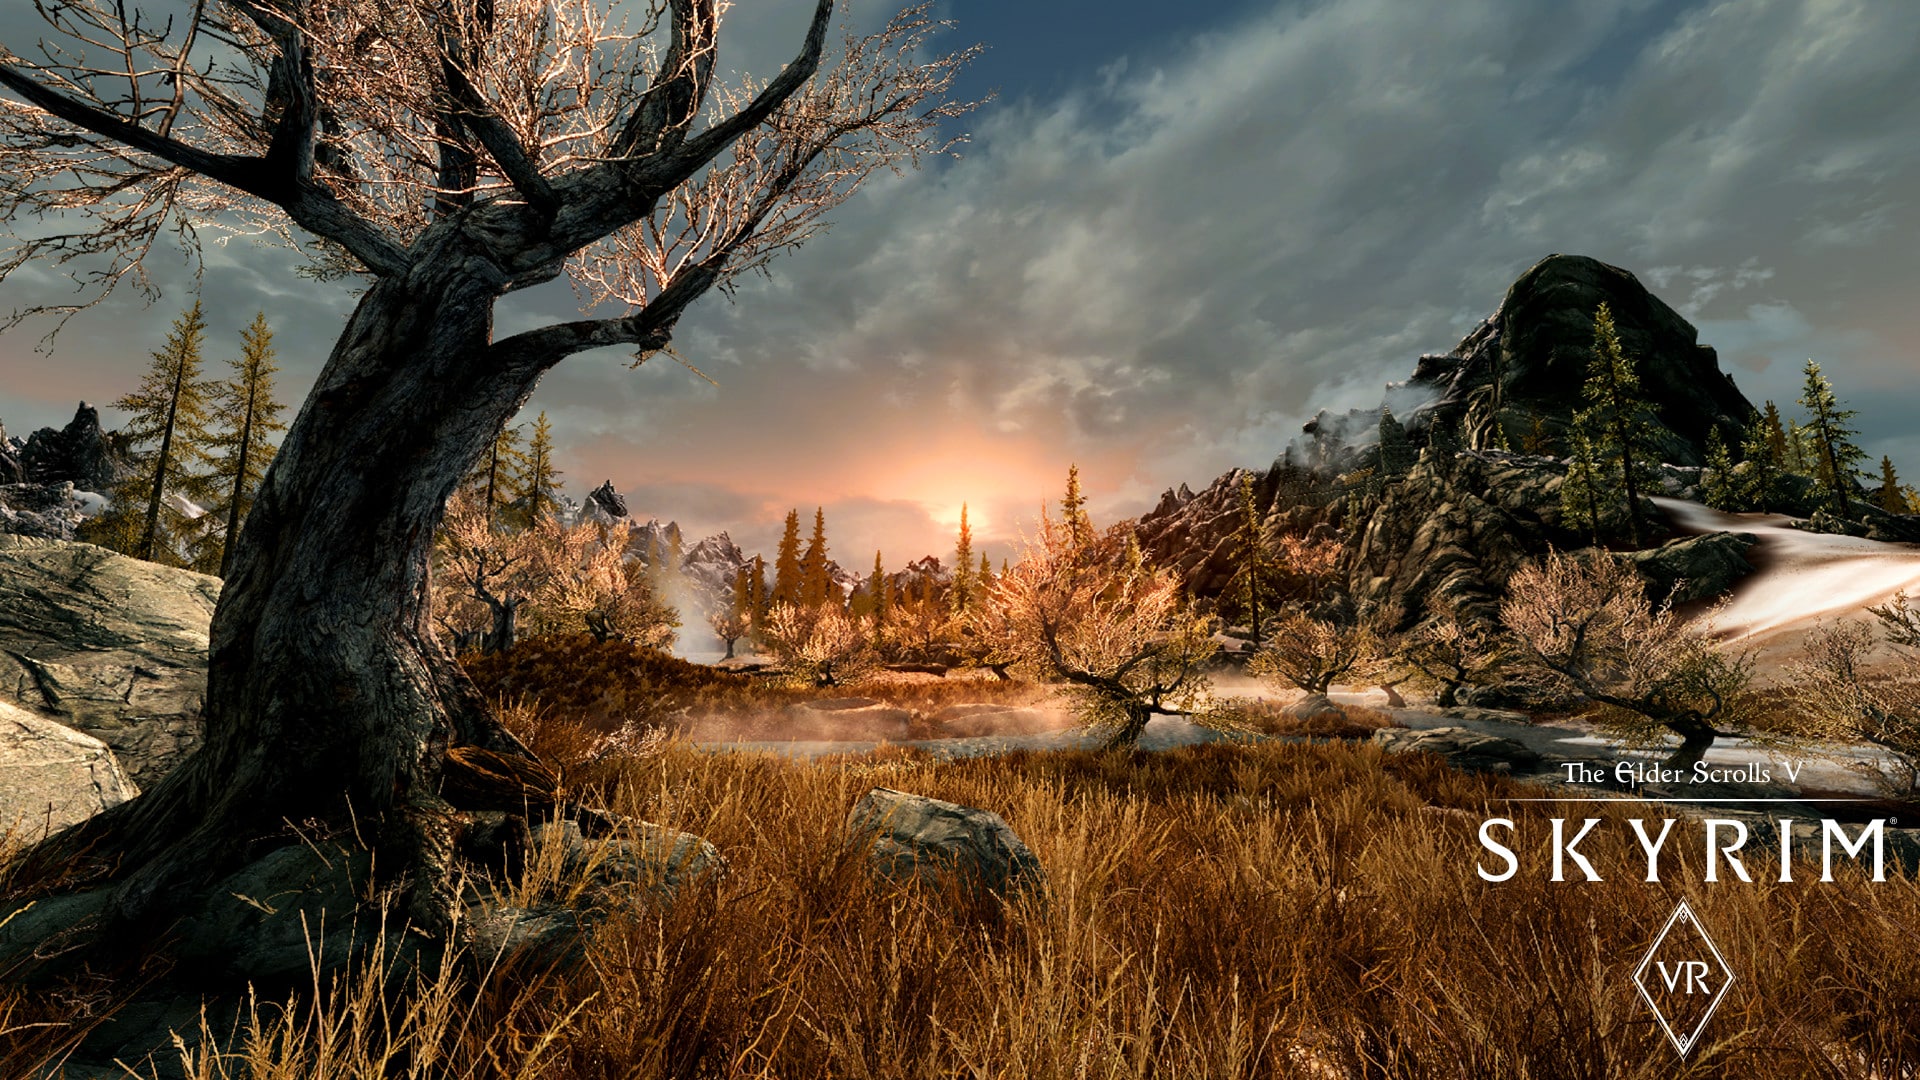 Buy The Elder Scrolls V Skyrim VR Steam Gift GLOBAL Cheap